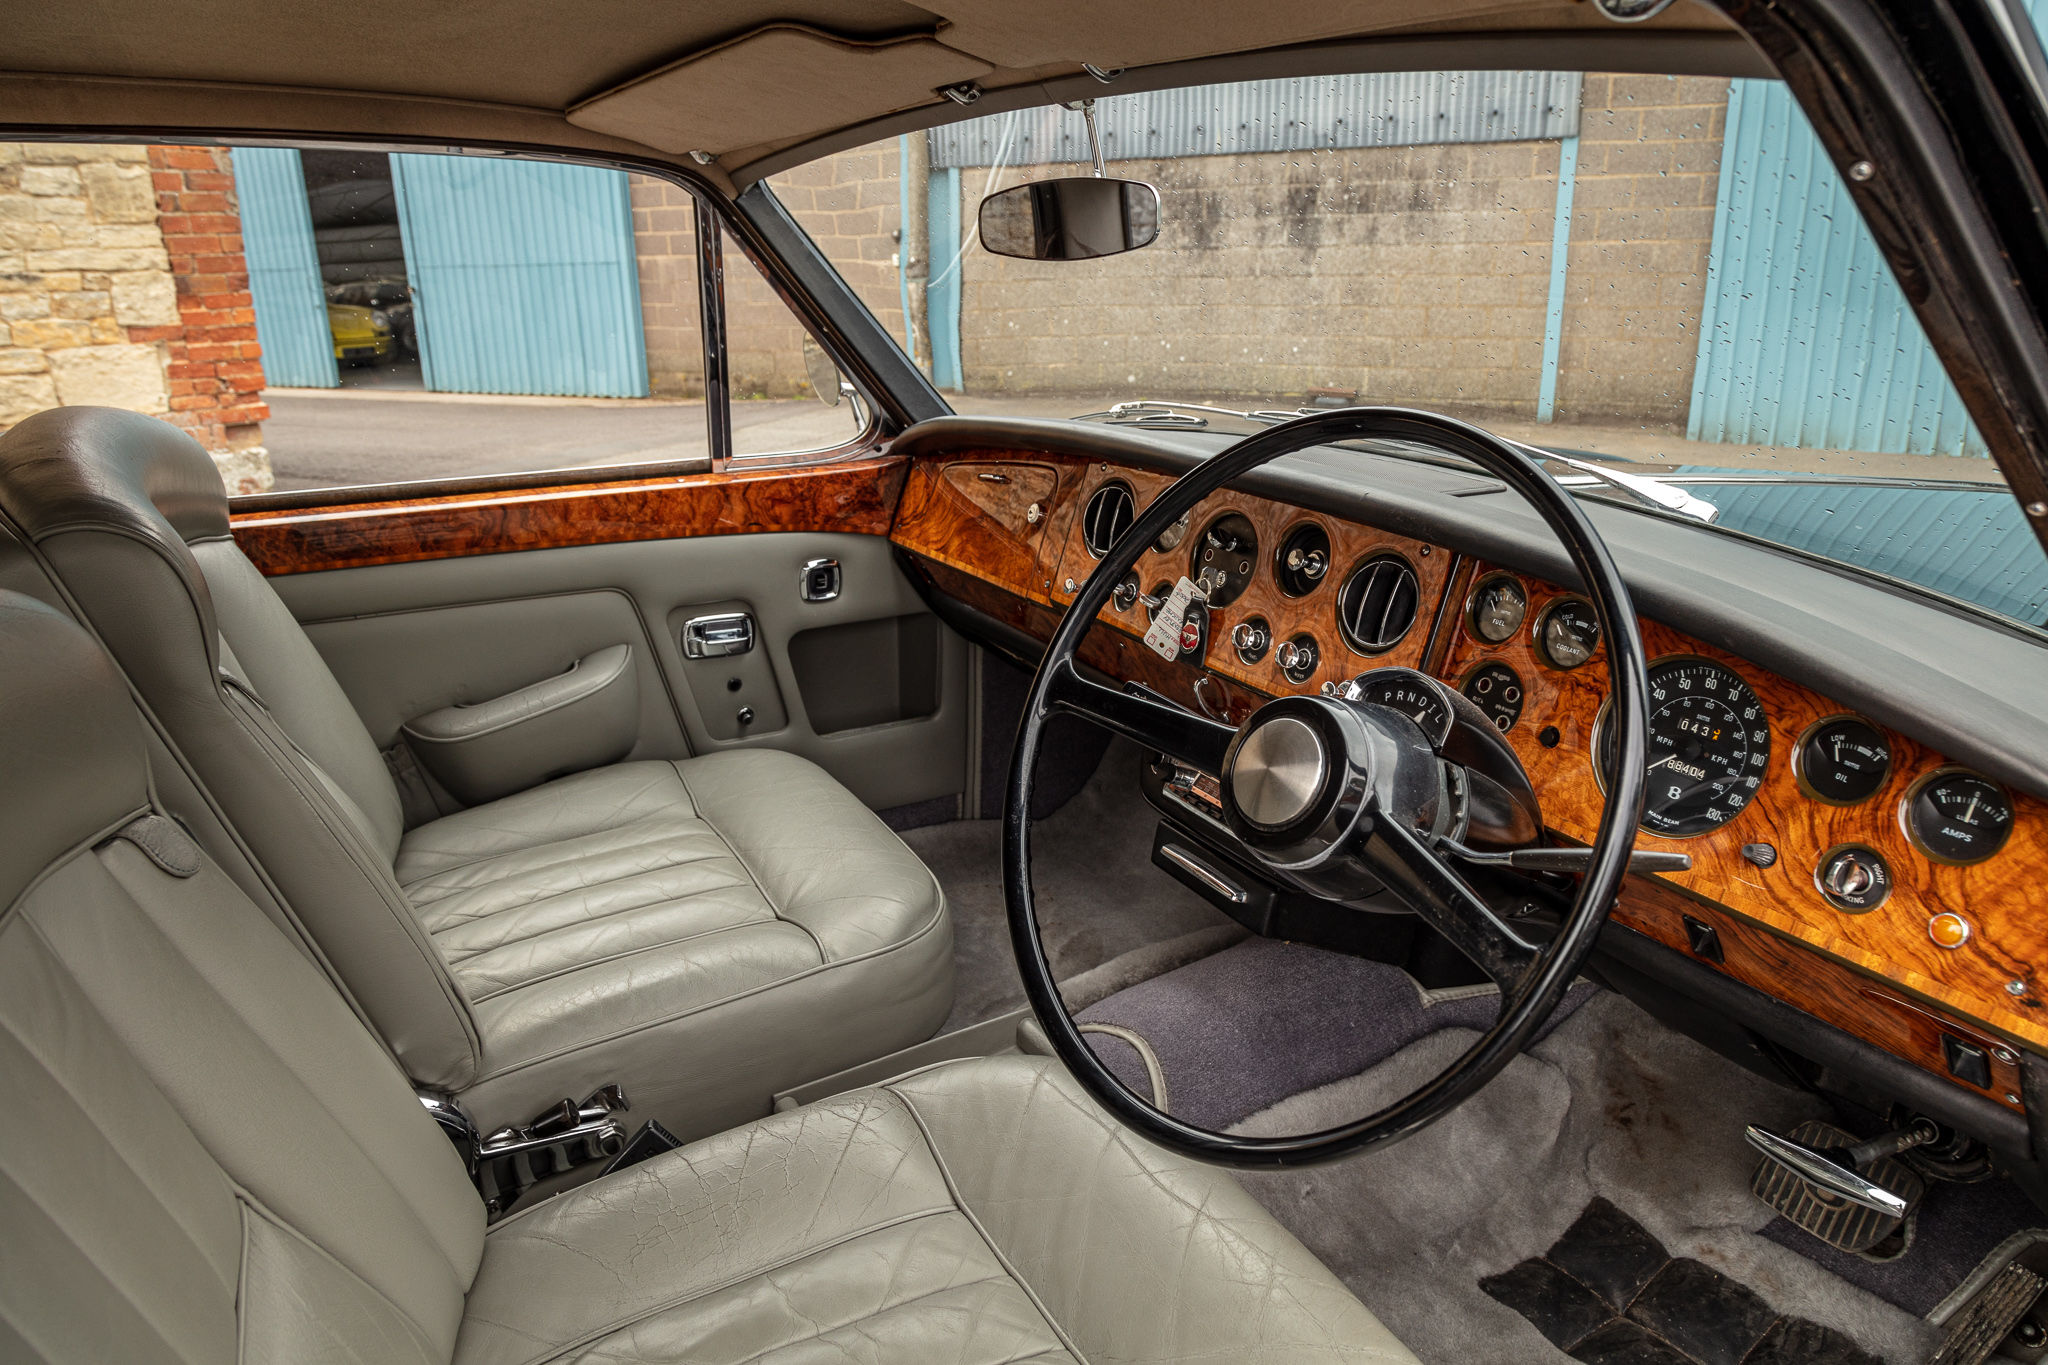 1968 Bentley T MPW Two-Door Saloon - Image 3 of 5